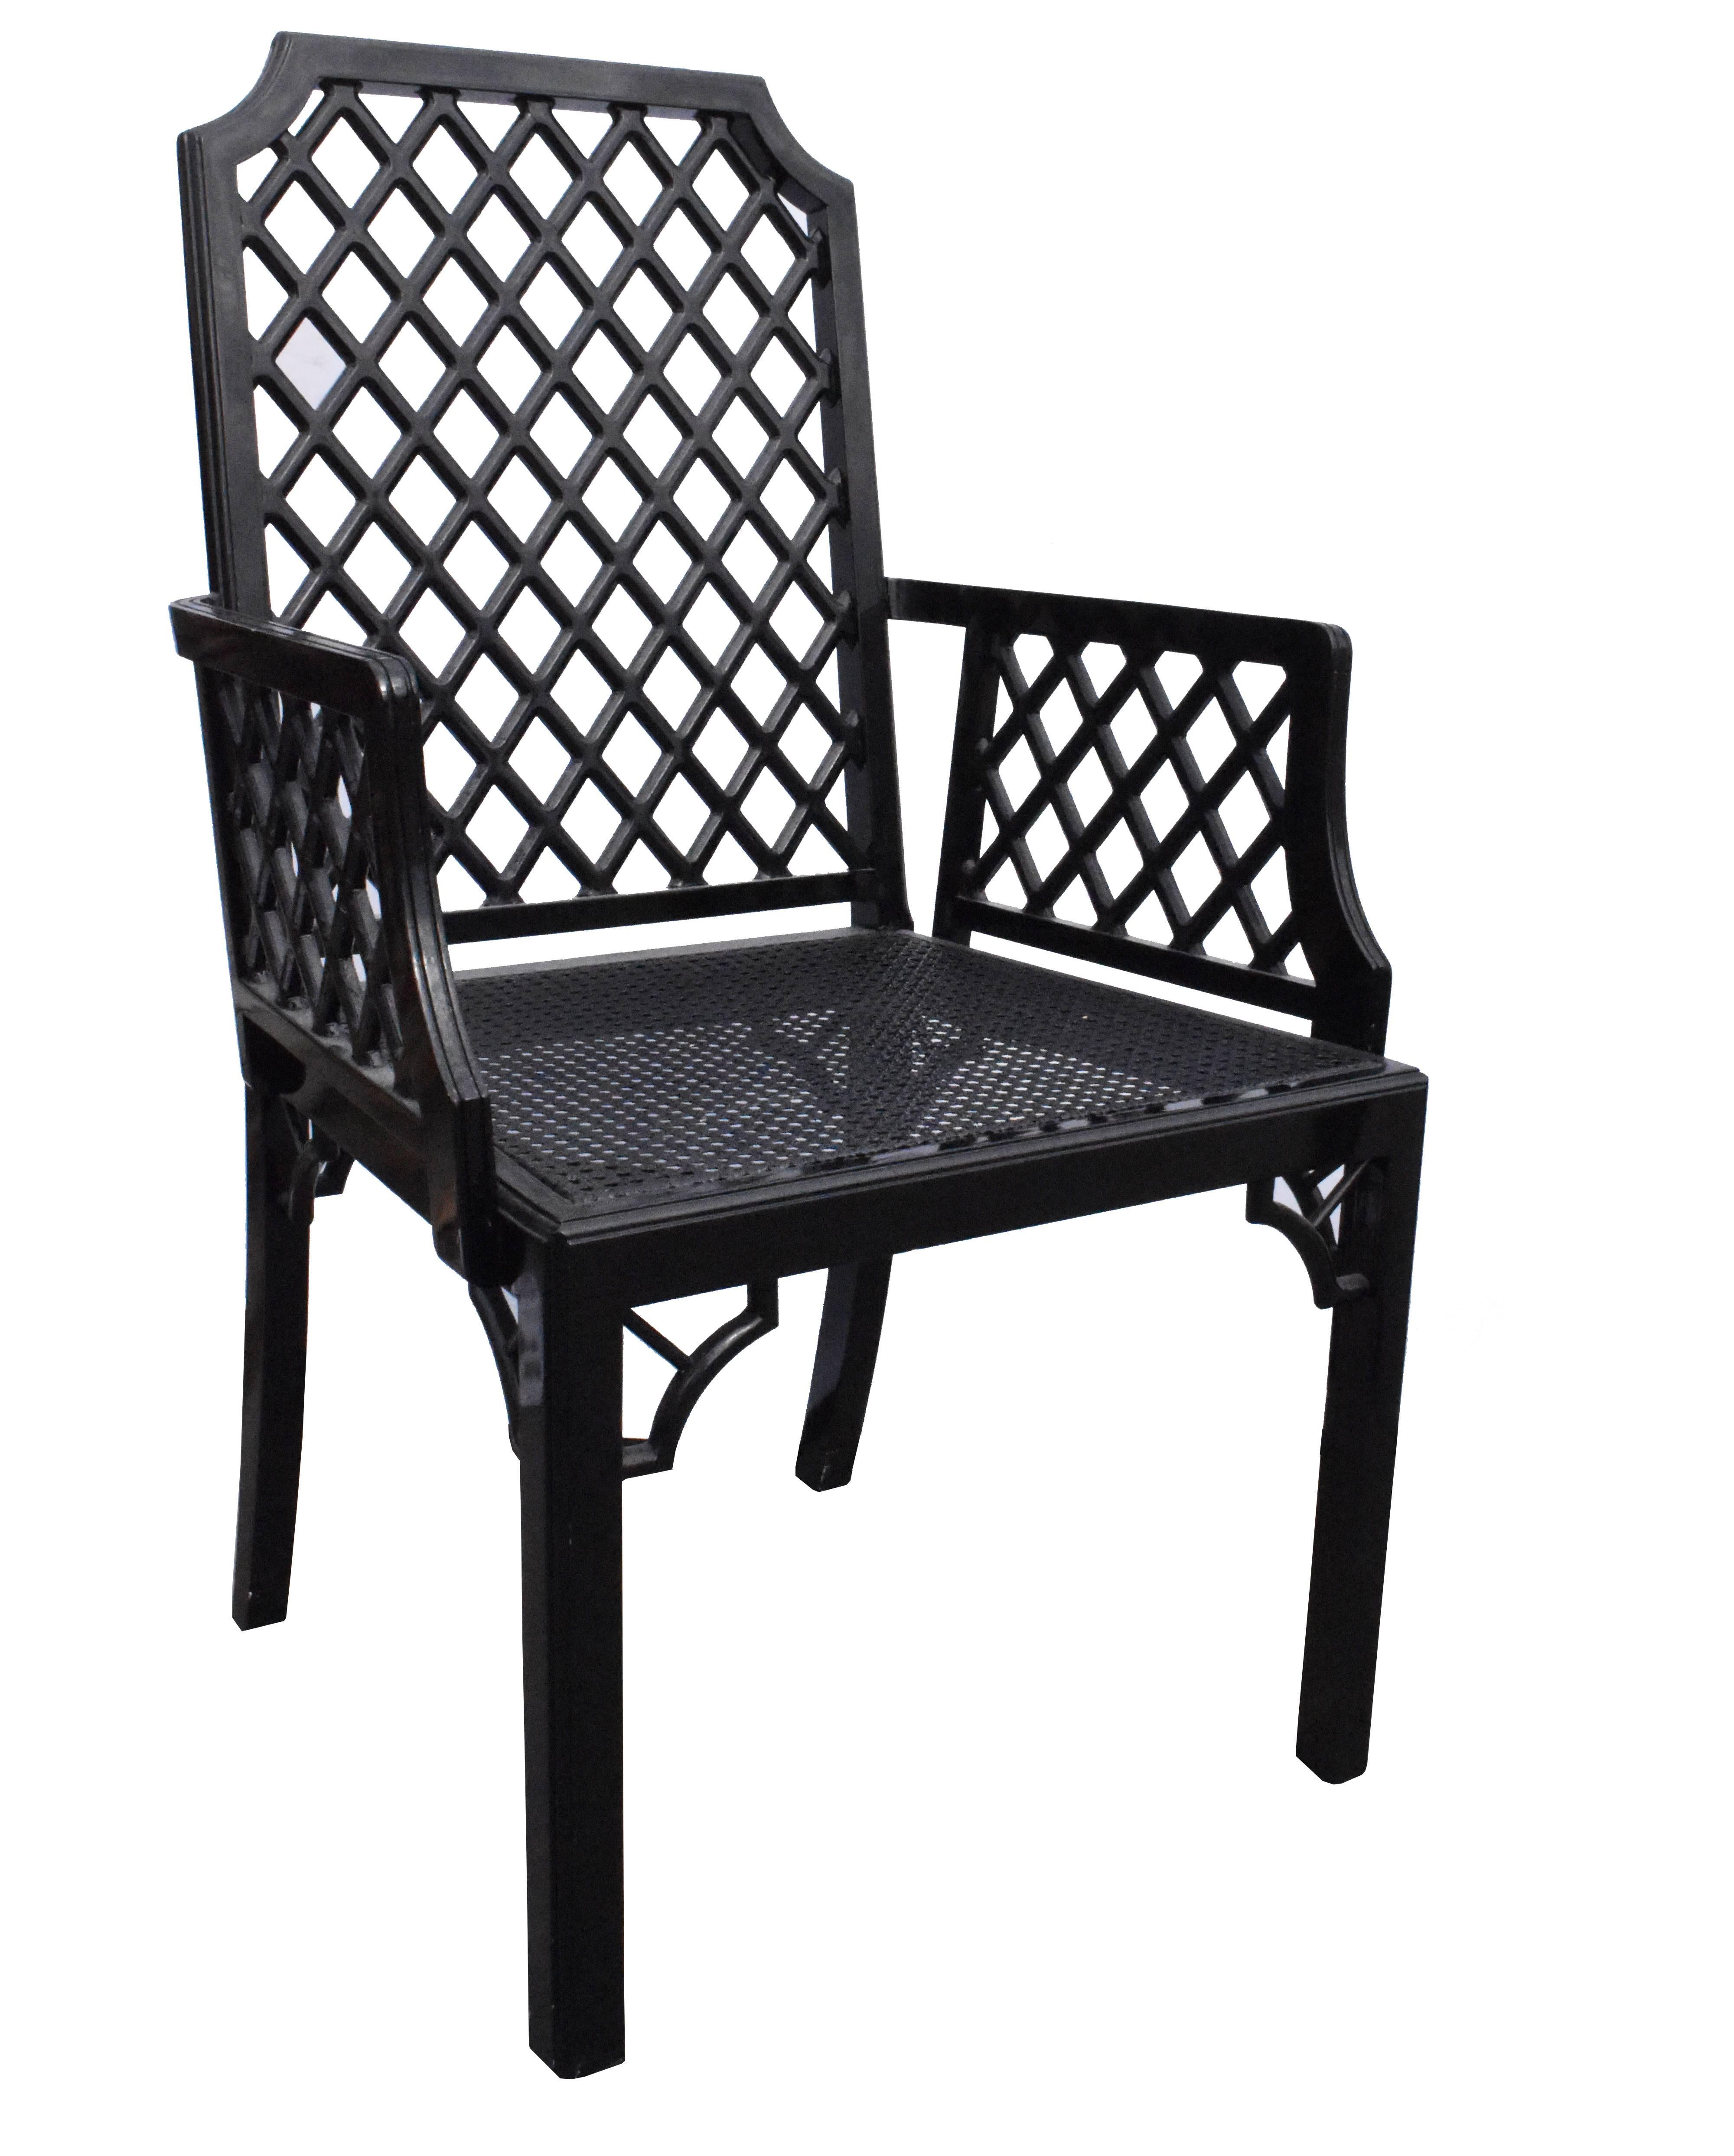 Schwarz lackiertes Holzset aus den 1980er Jahren mit vier Stühlen und zwei Sesseln. Die Sitze sind mit einem Rattangittermuster verziert.